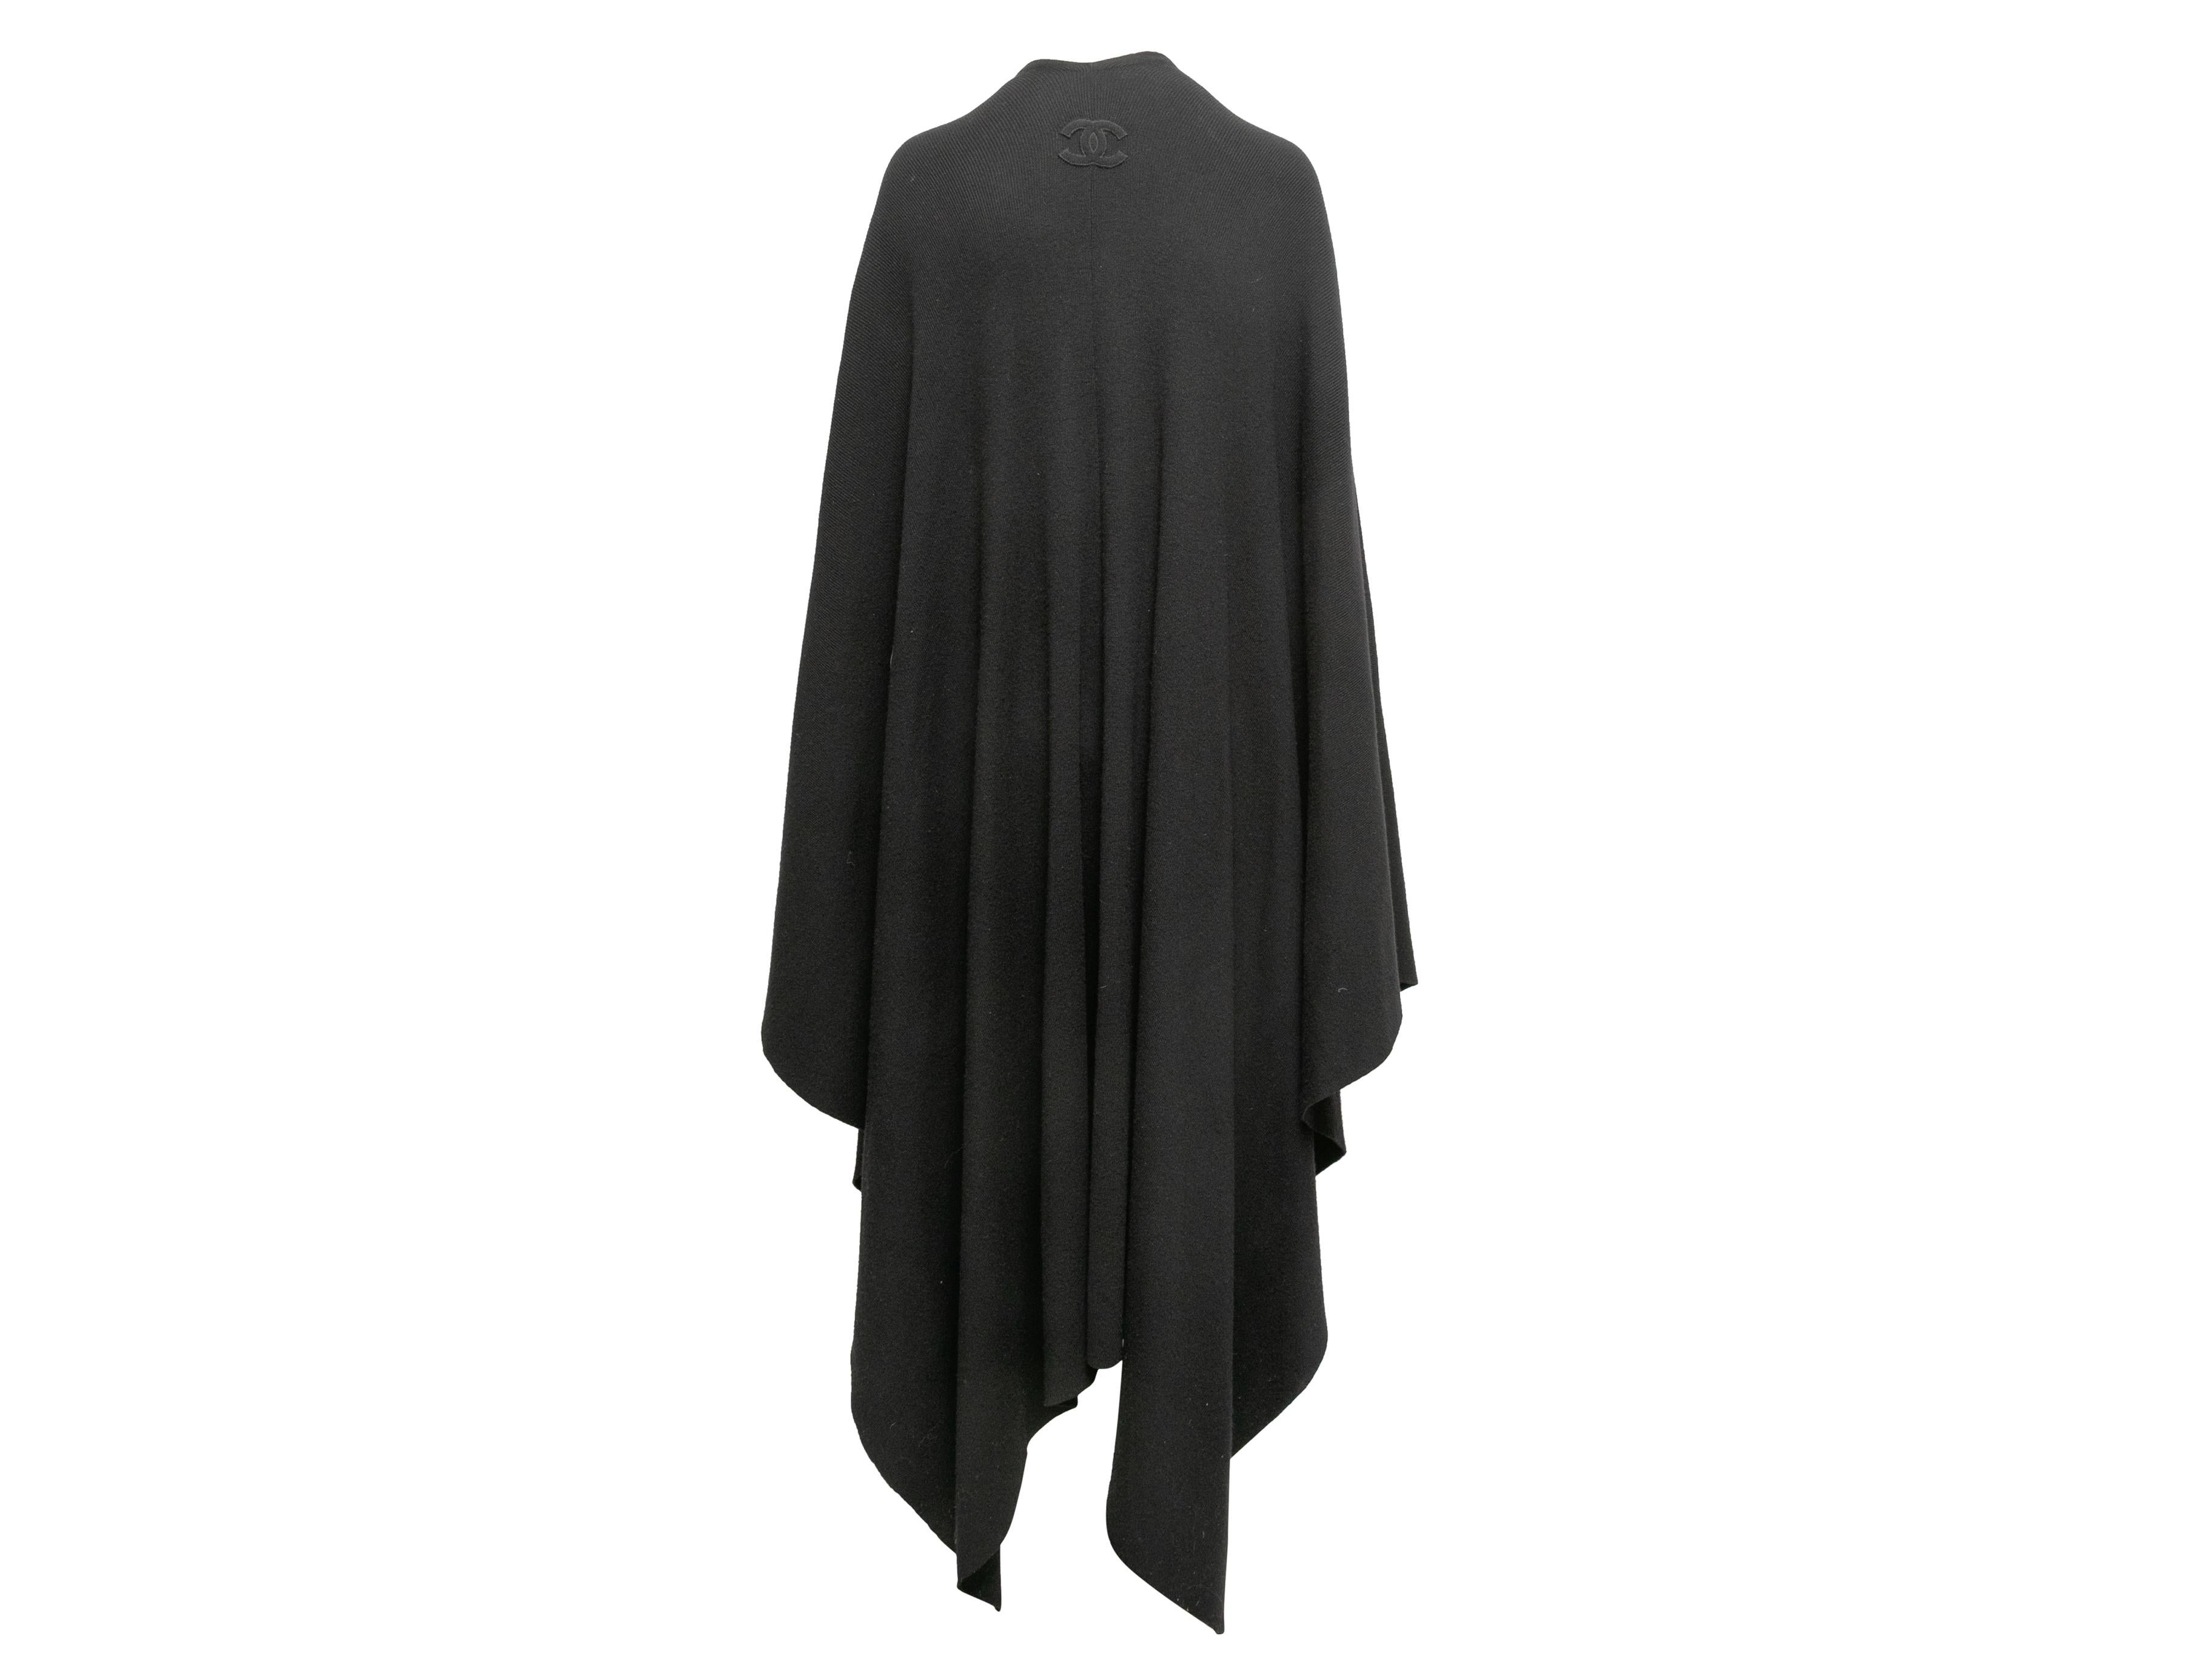 Longue cape châle en laine noire de Chanel. Ourlet asymétrique. Poitrine 66